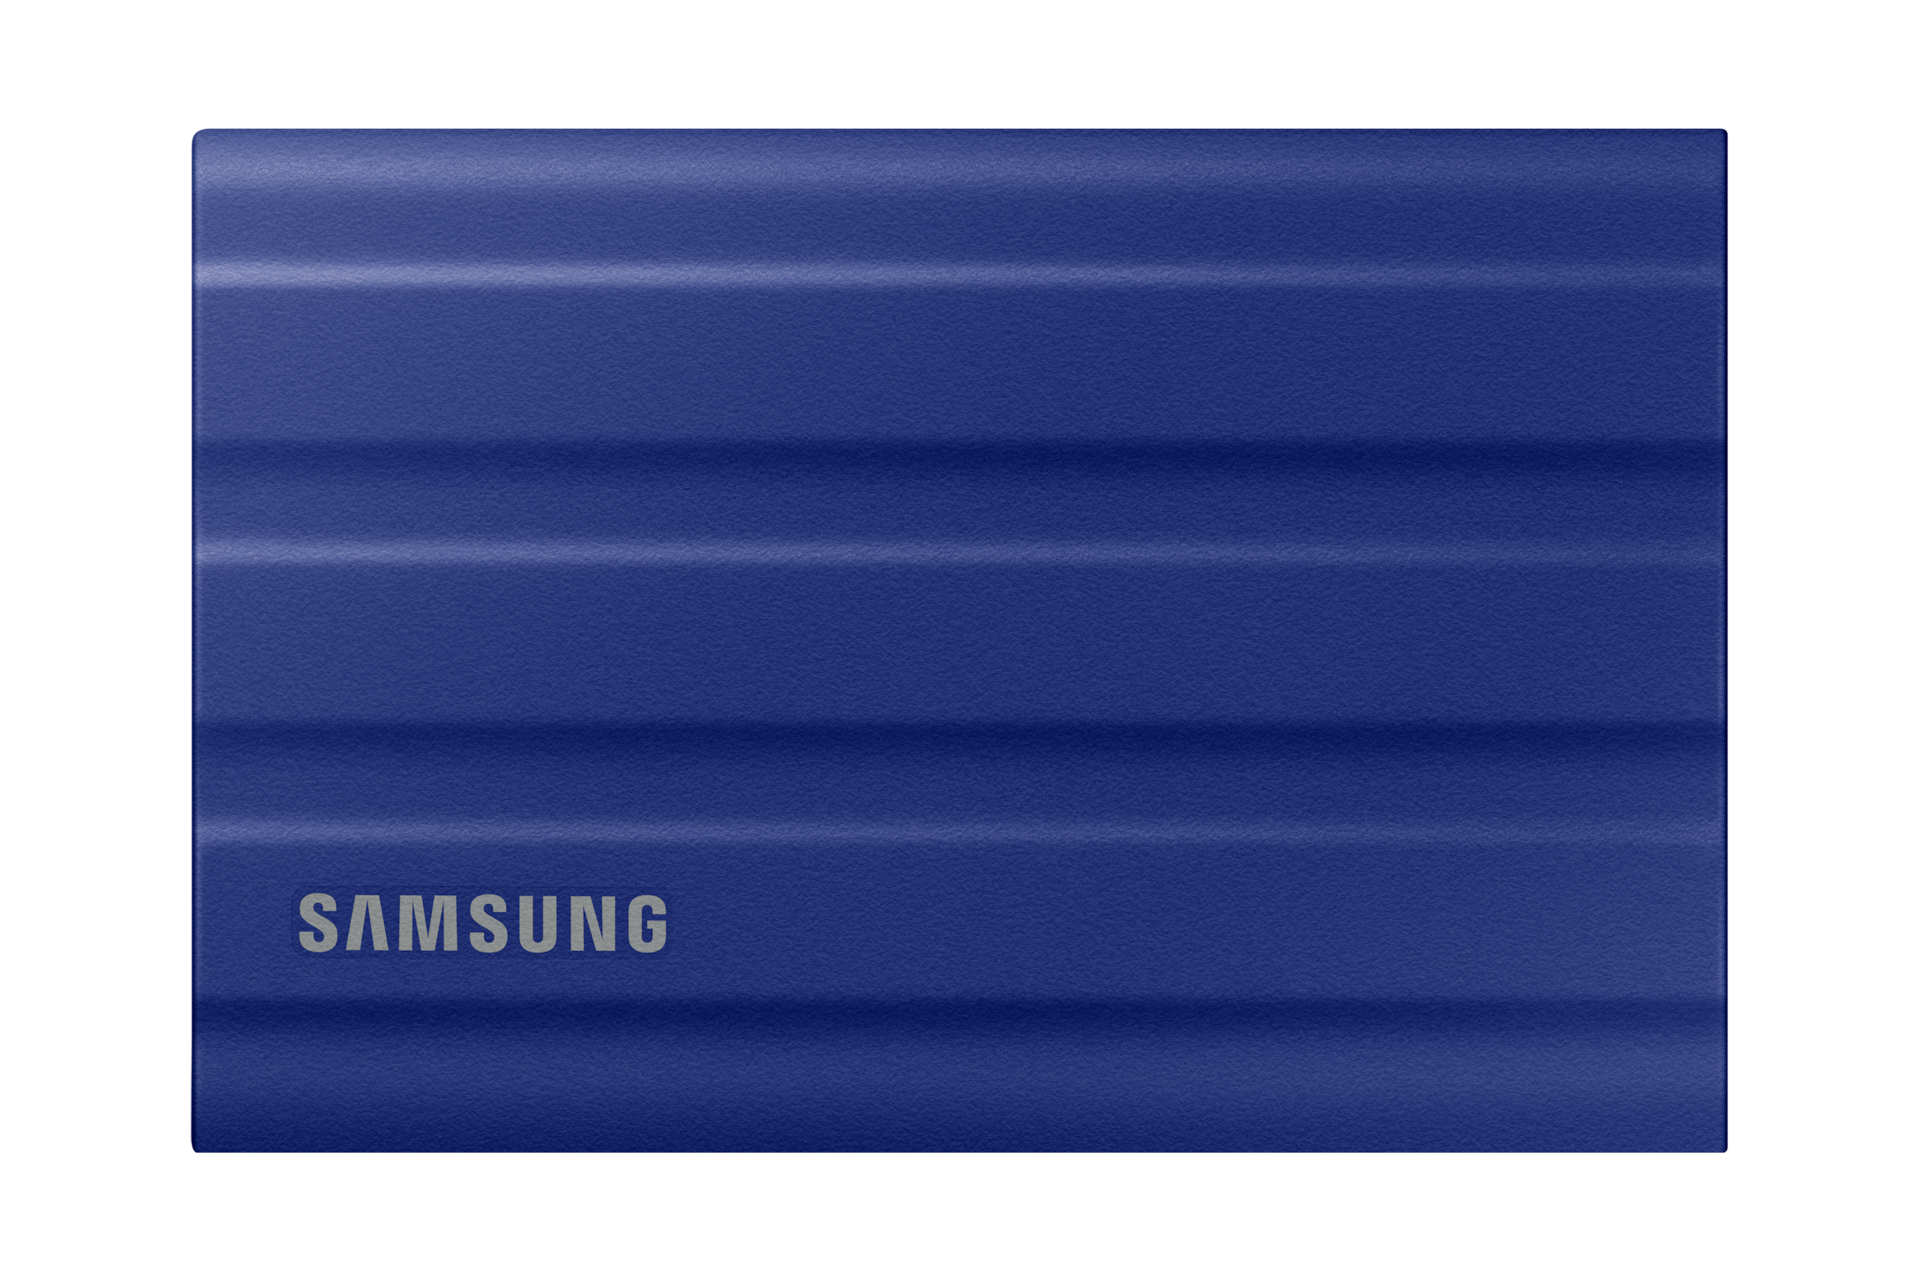 Samsung T7  Le guide d'achat des meilleurs SSD portables sur Je veux le.top